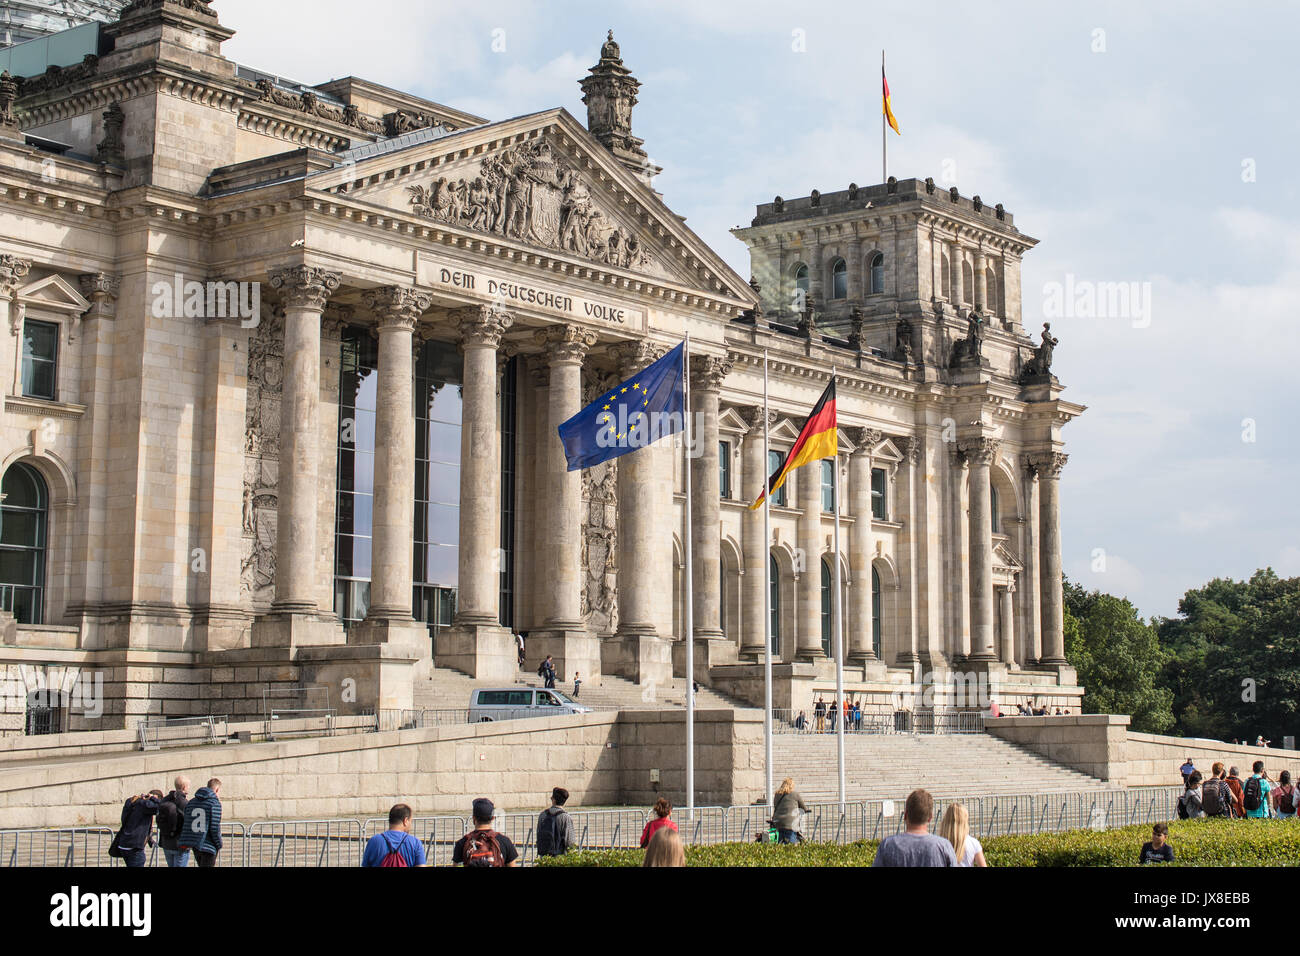 L'allemand et l'Union européenne (UE) drapeaux flottants devant le bâtiment du Reichstag à Berlin, Allemagne. Banque D'Images